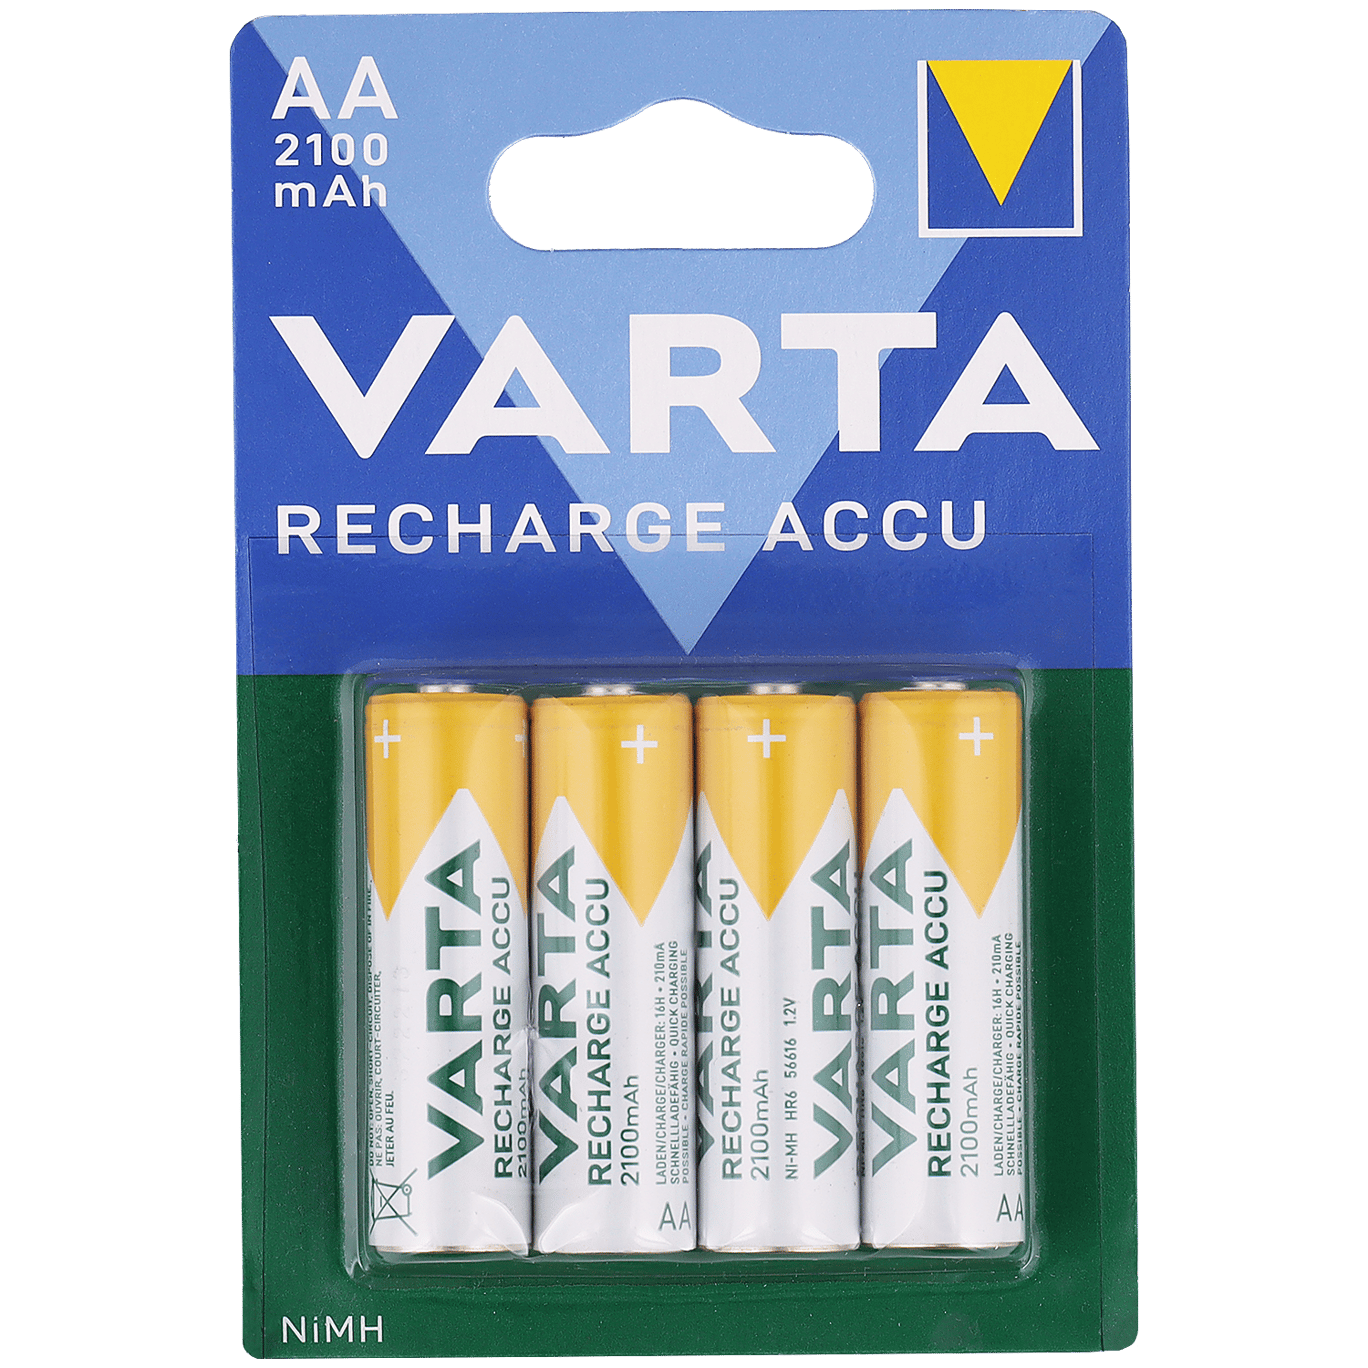 Geheugen worstelen rechtbank Varta batterijen oplaadbaar AA | Action.com